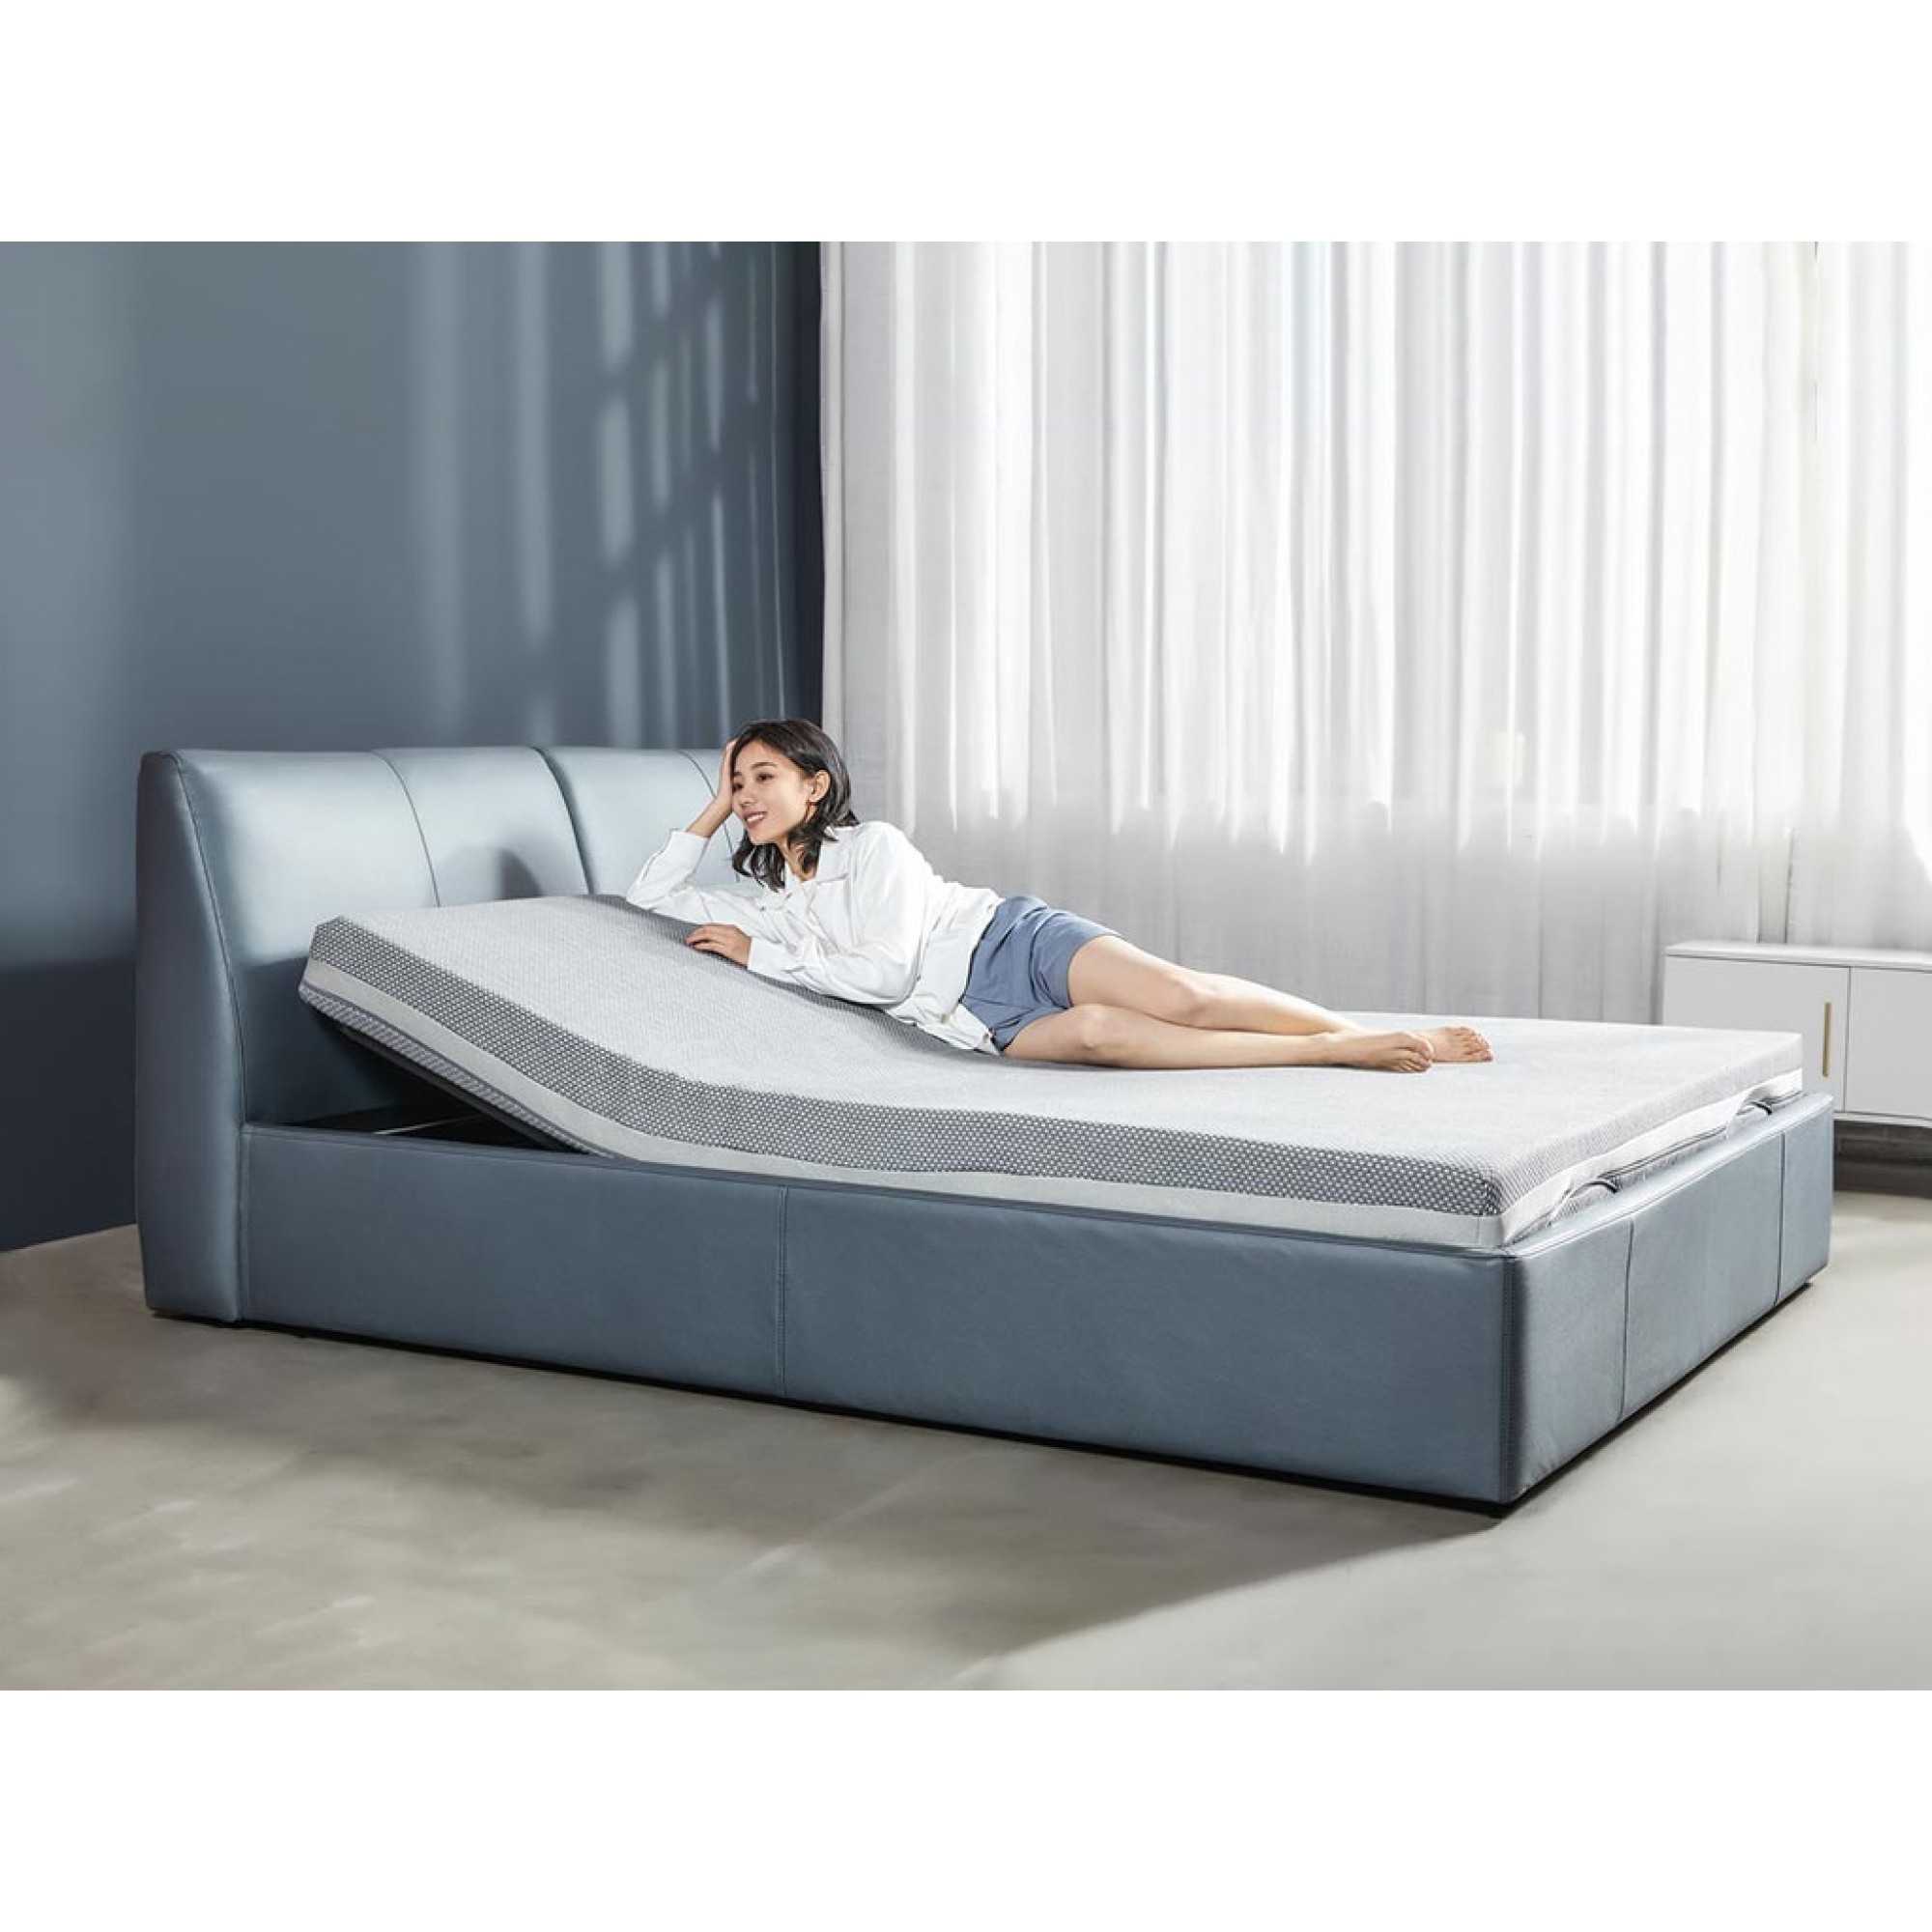 Функциональная кровать: как выбрать подходящую модель